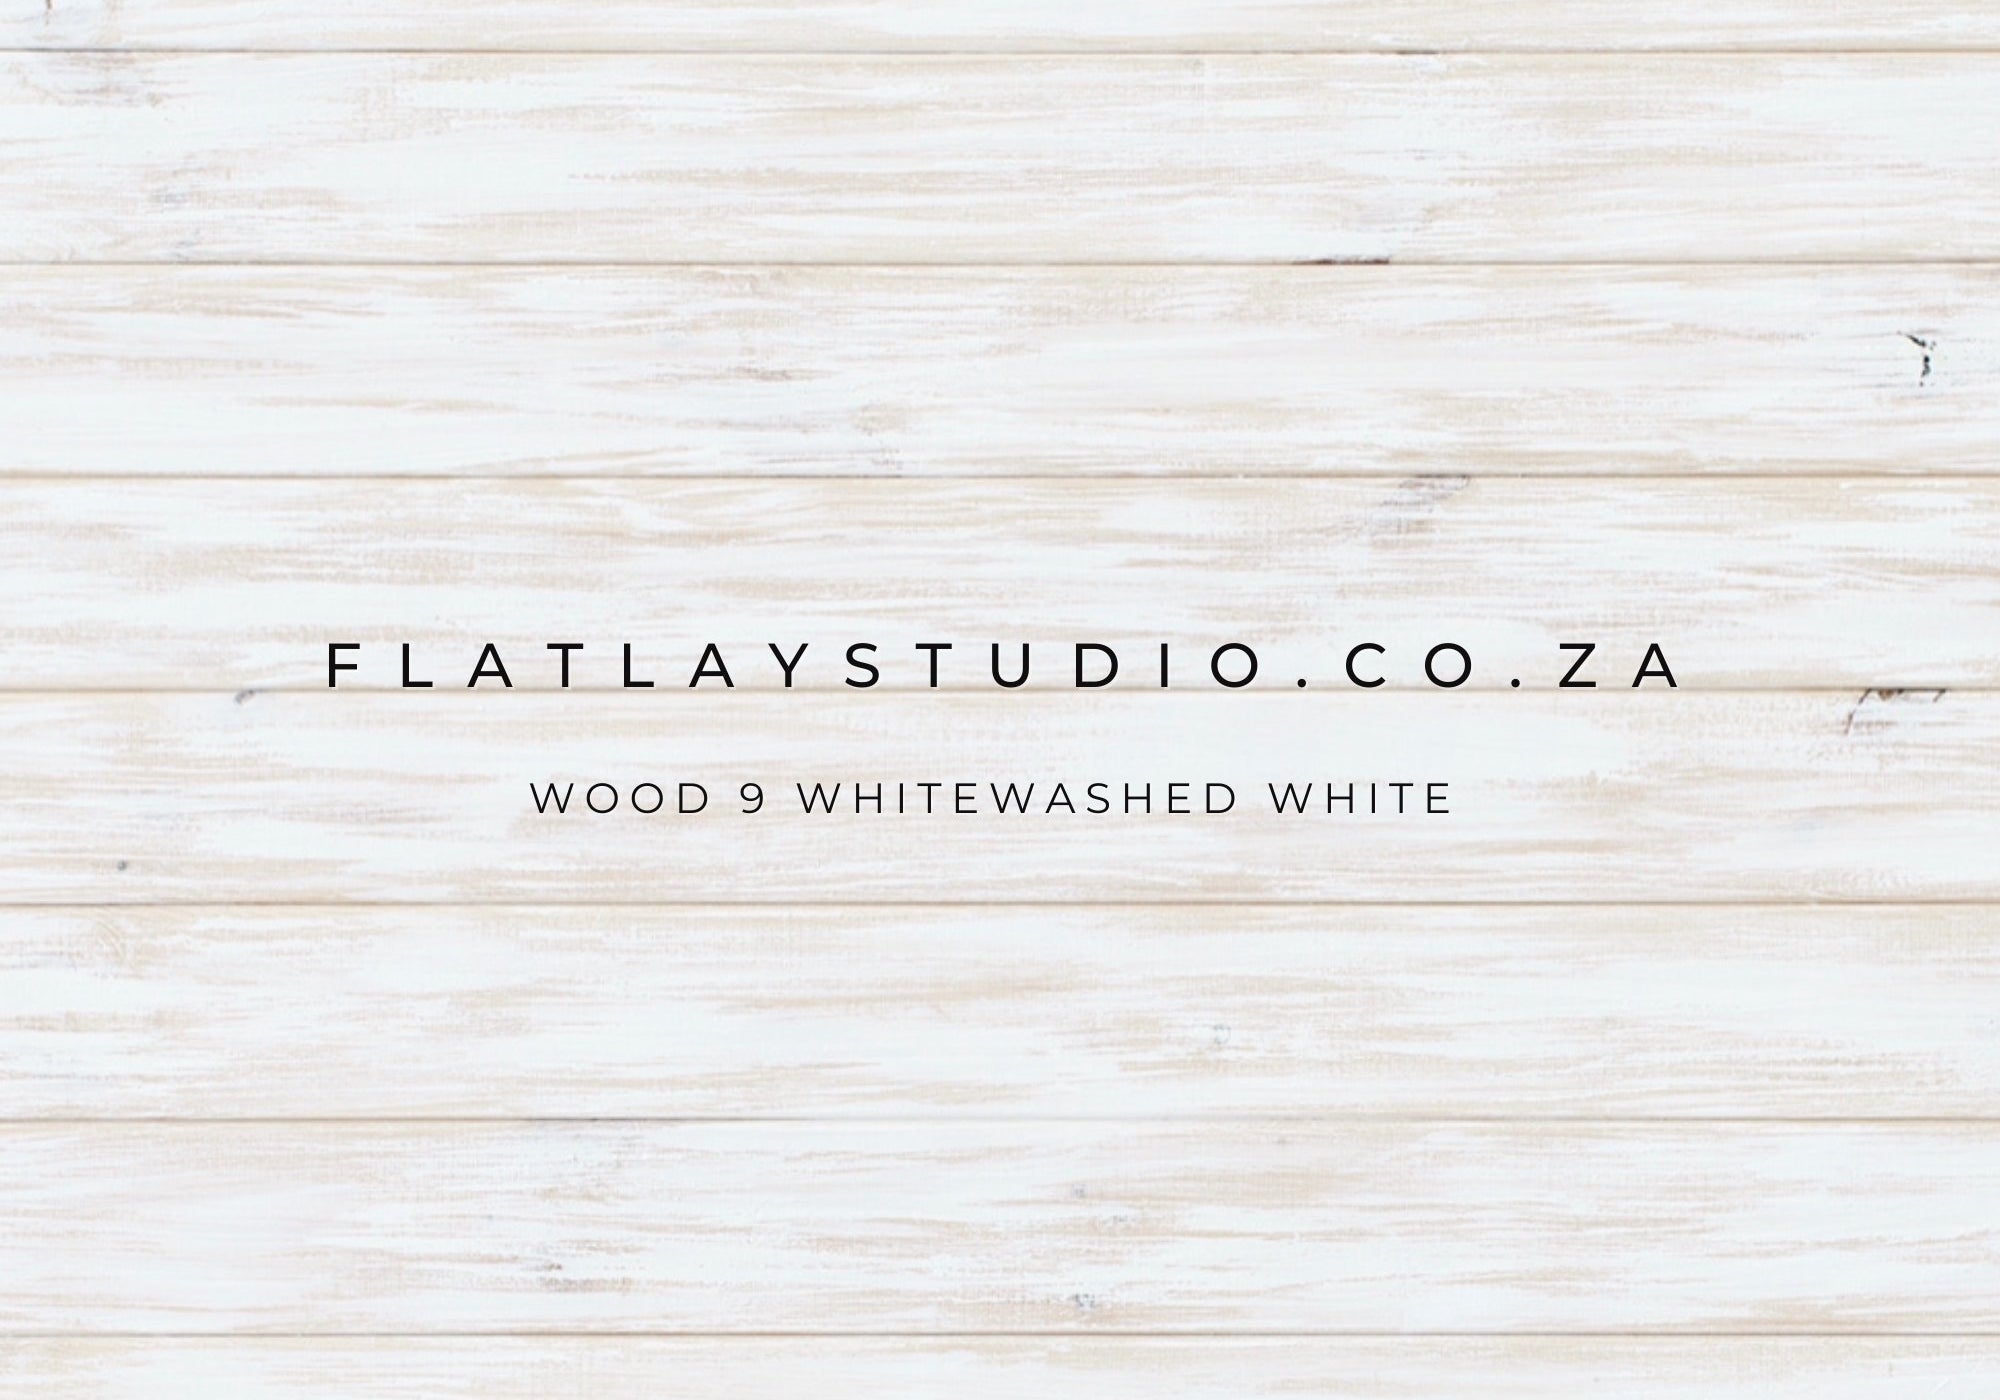 Wood 9 Whitewashed White - FlatlayStudio